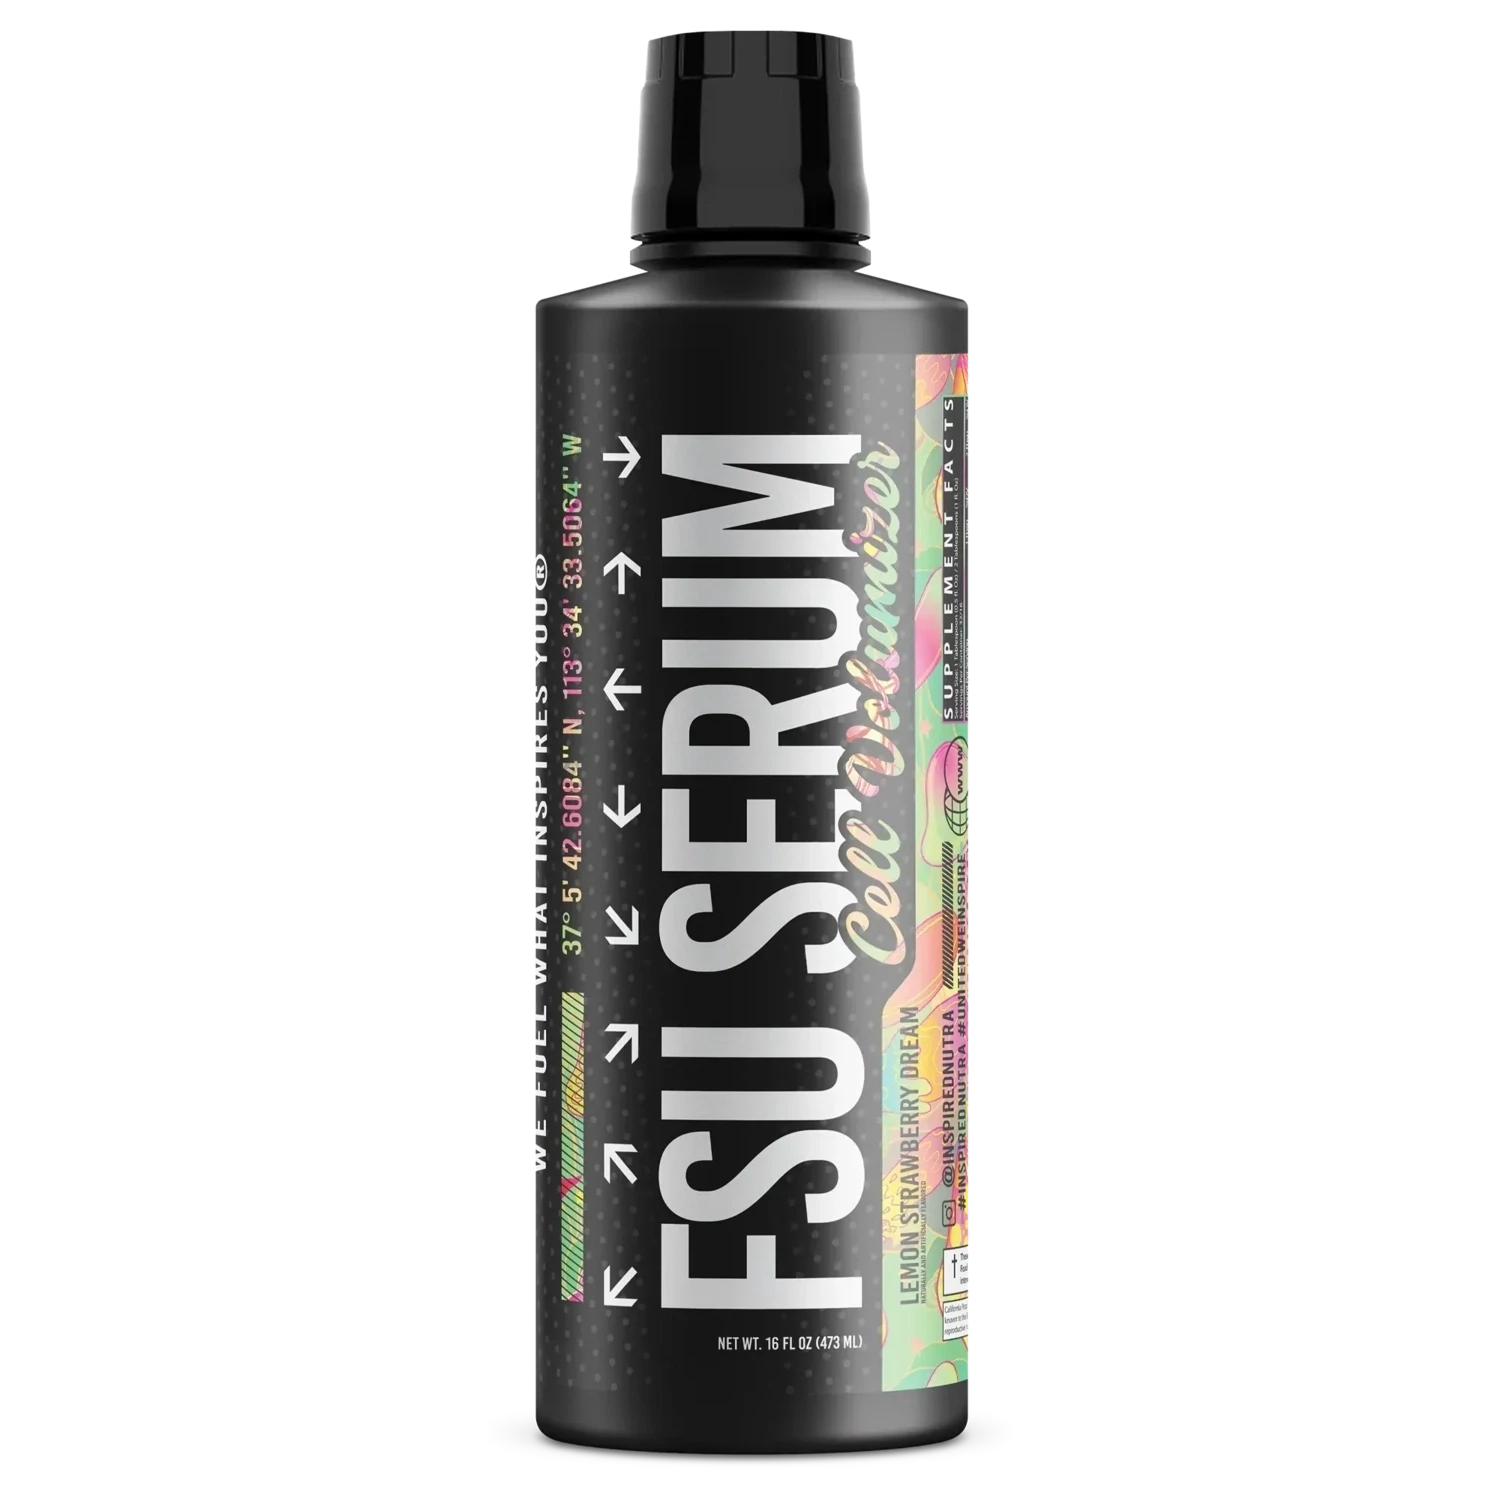 Inspired FSU Serum Liquid Non-Stim Pre-Workout